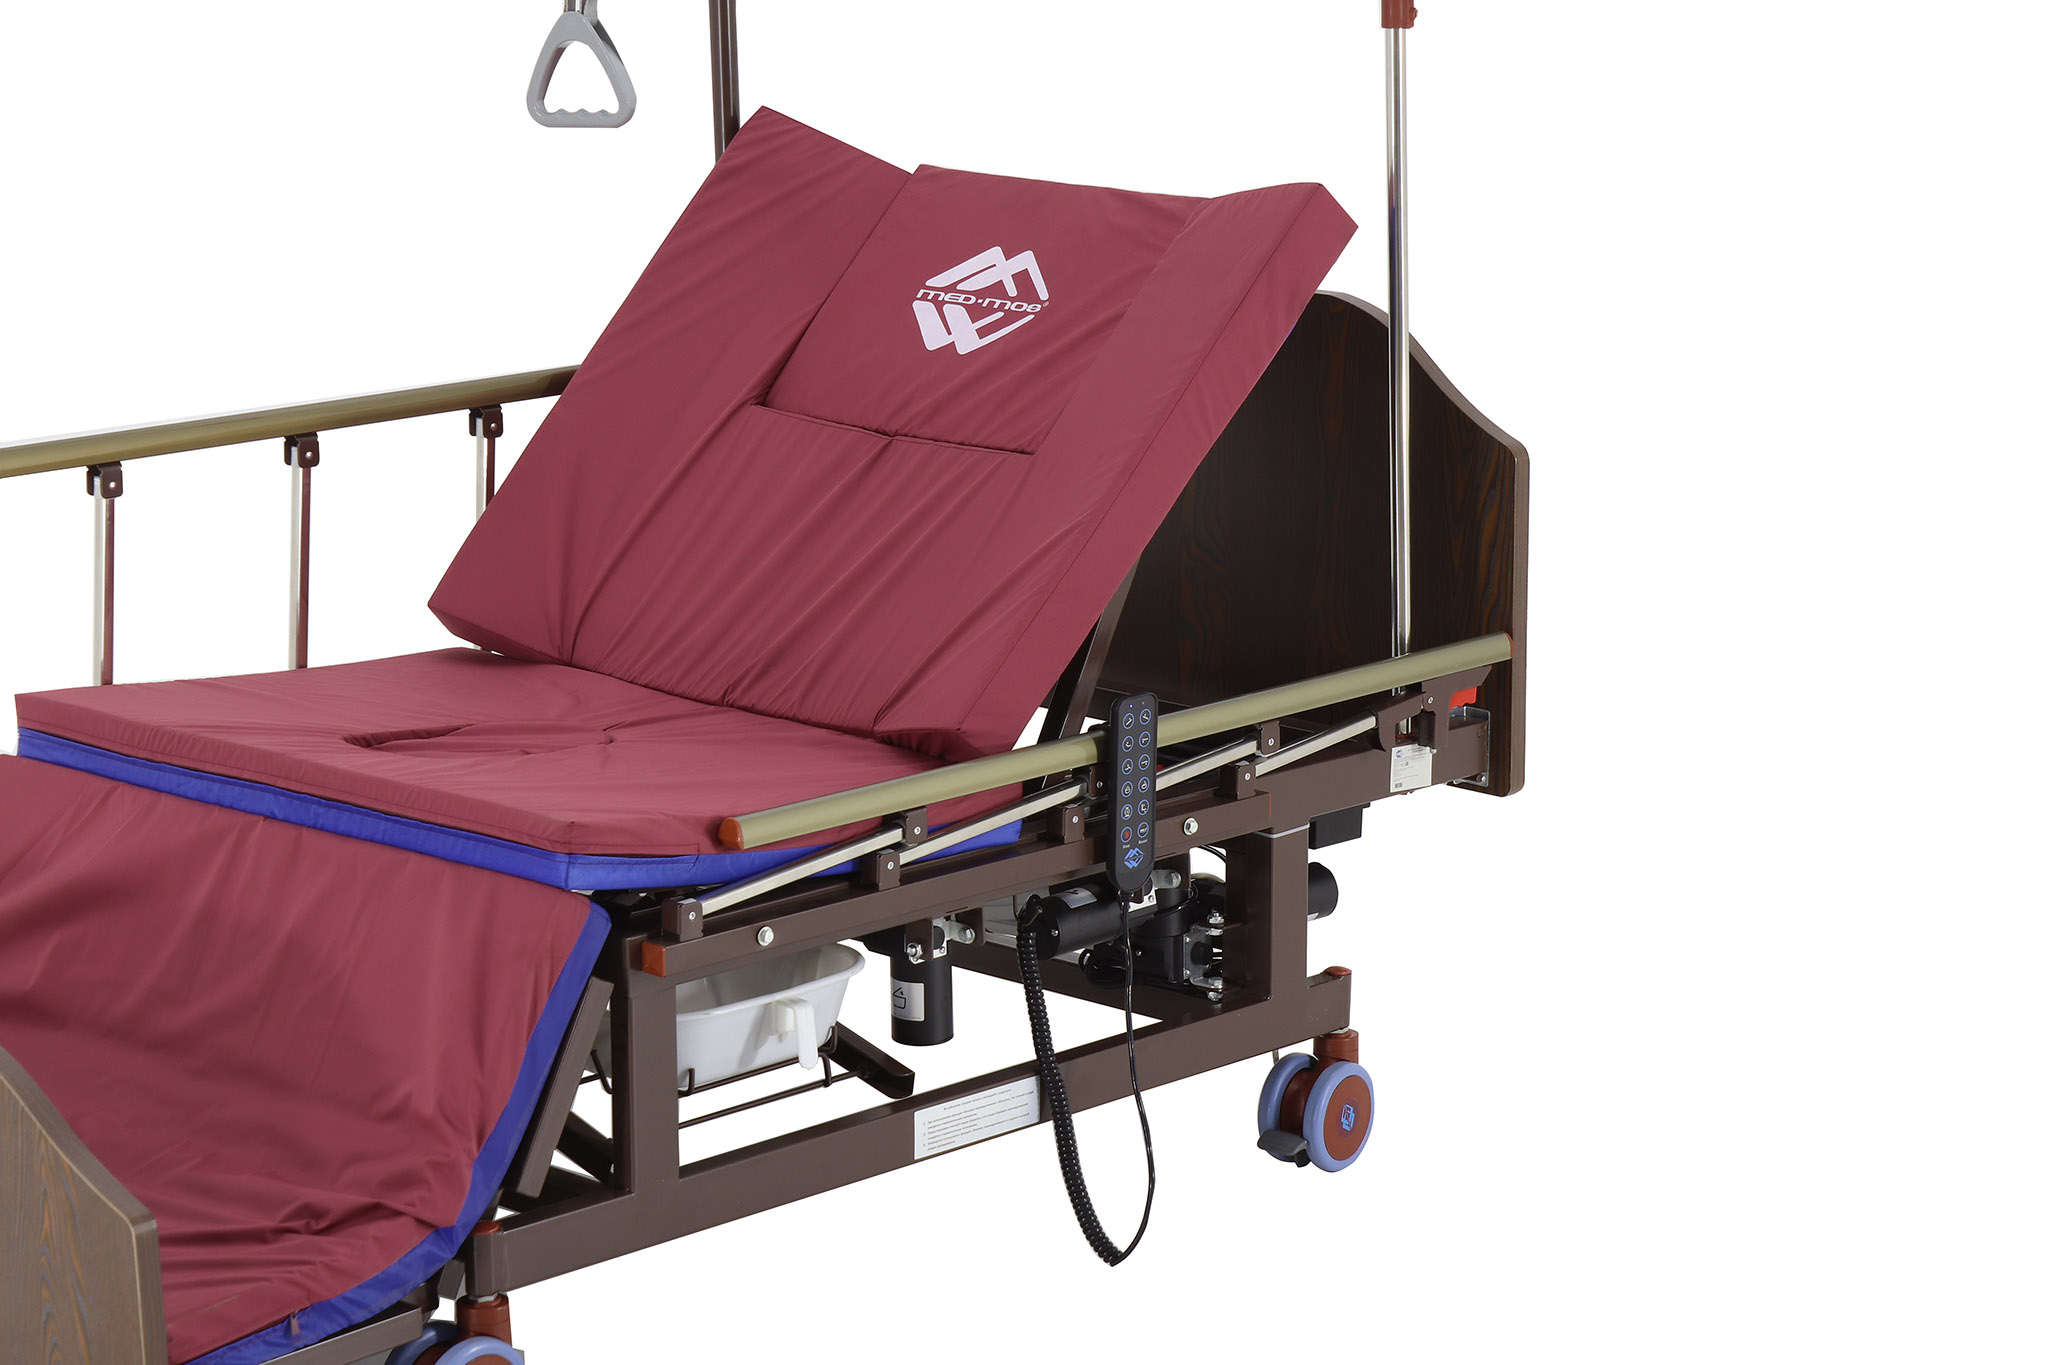 функциональные медицинские кровати для лежачих